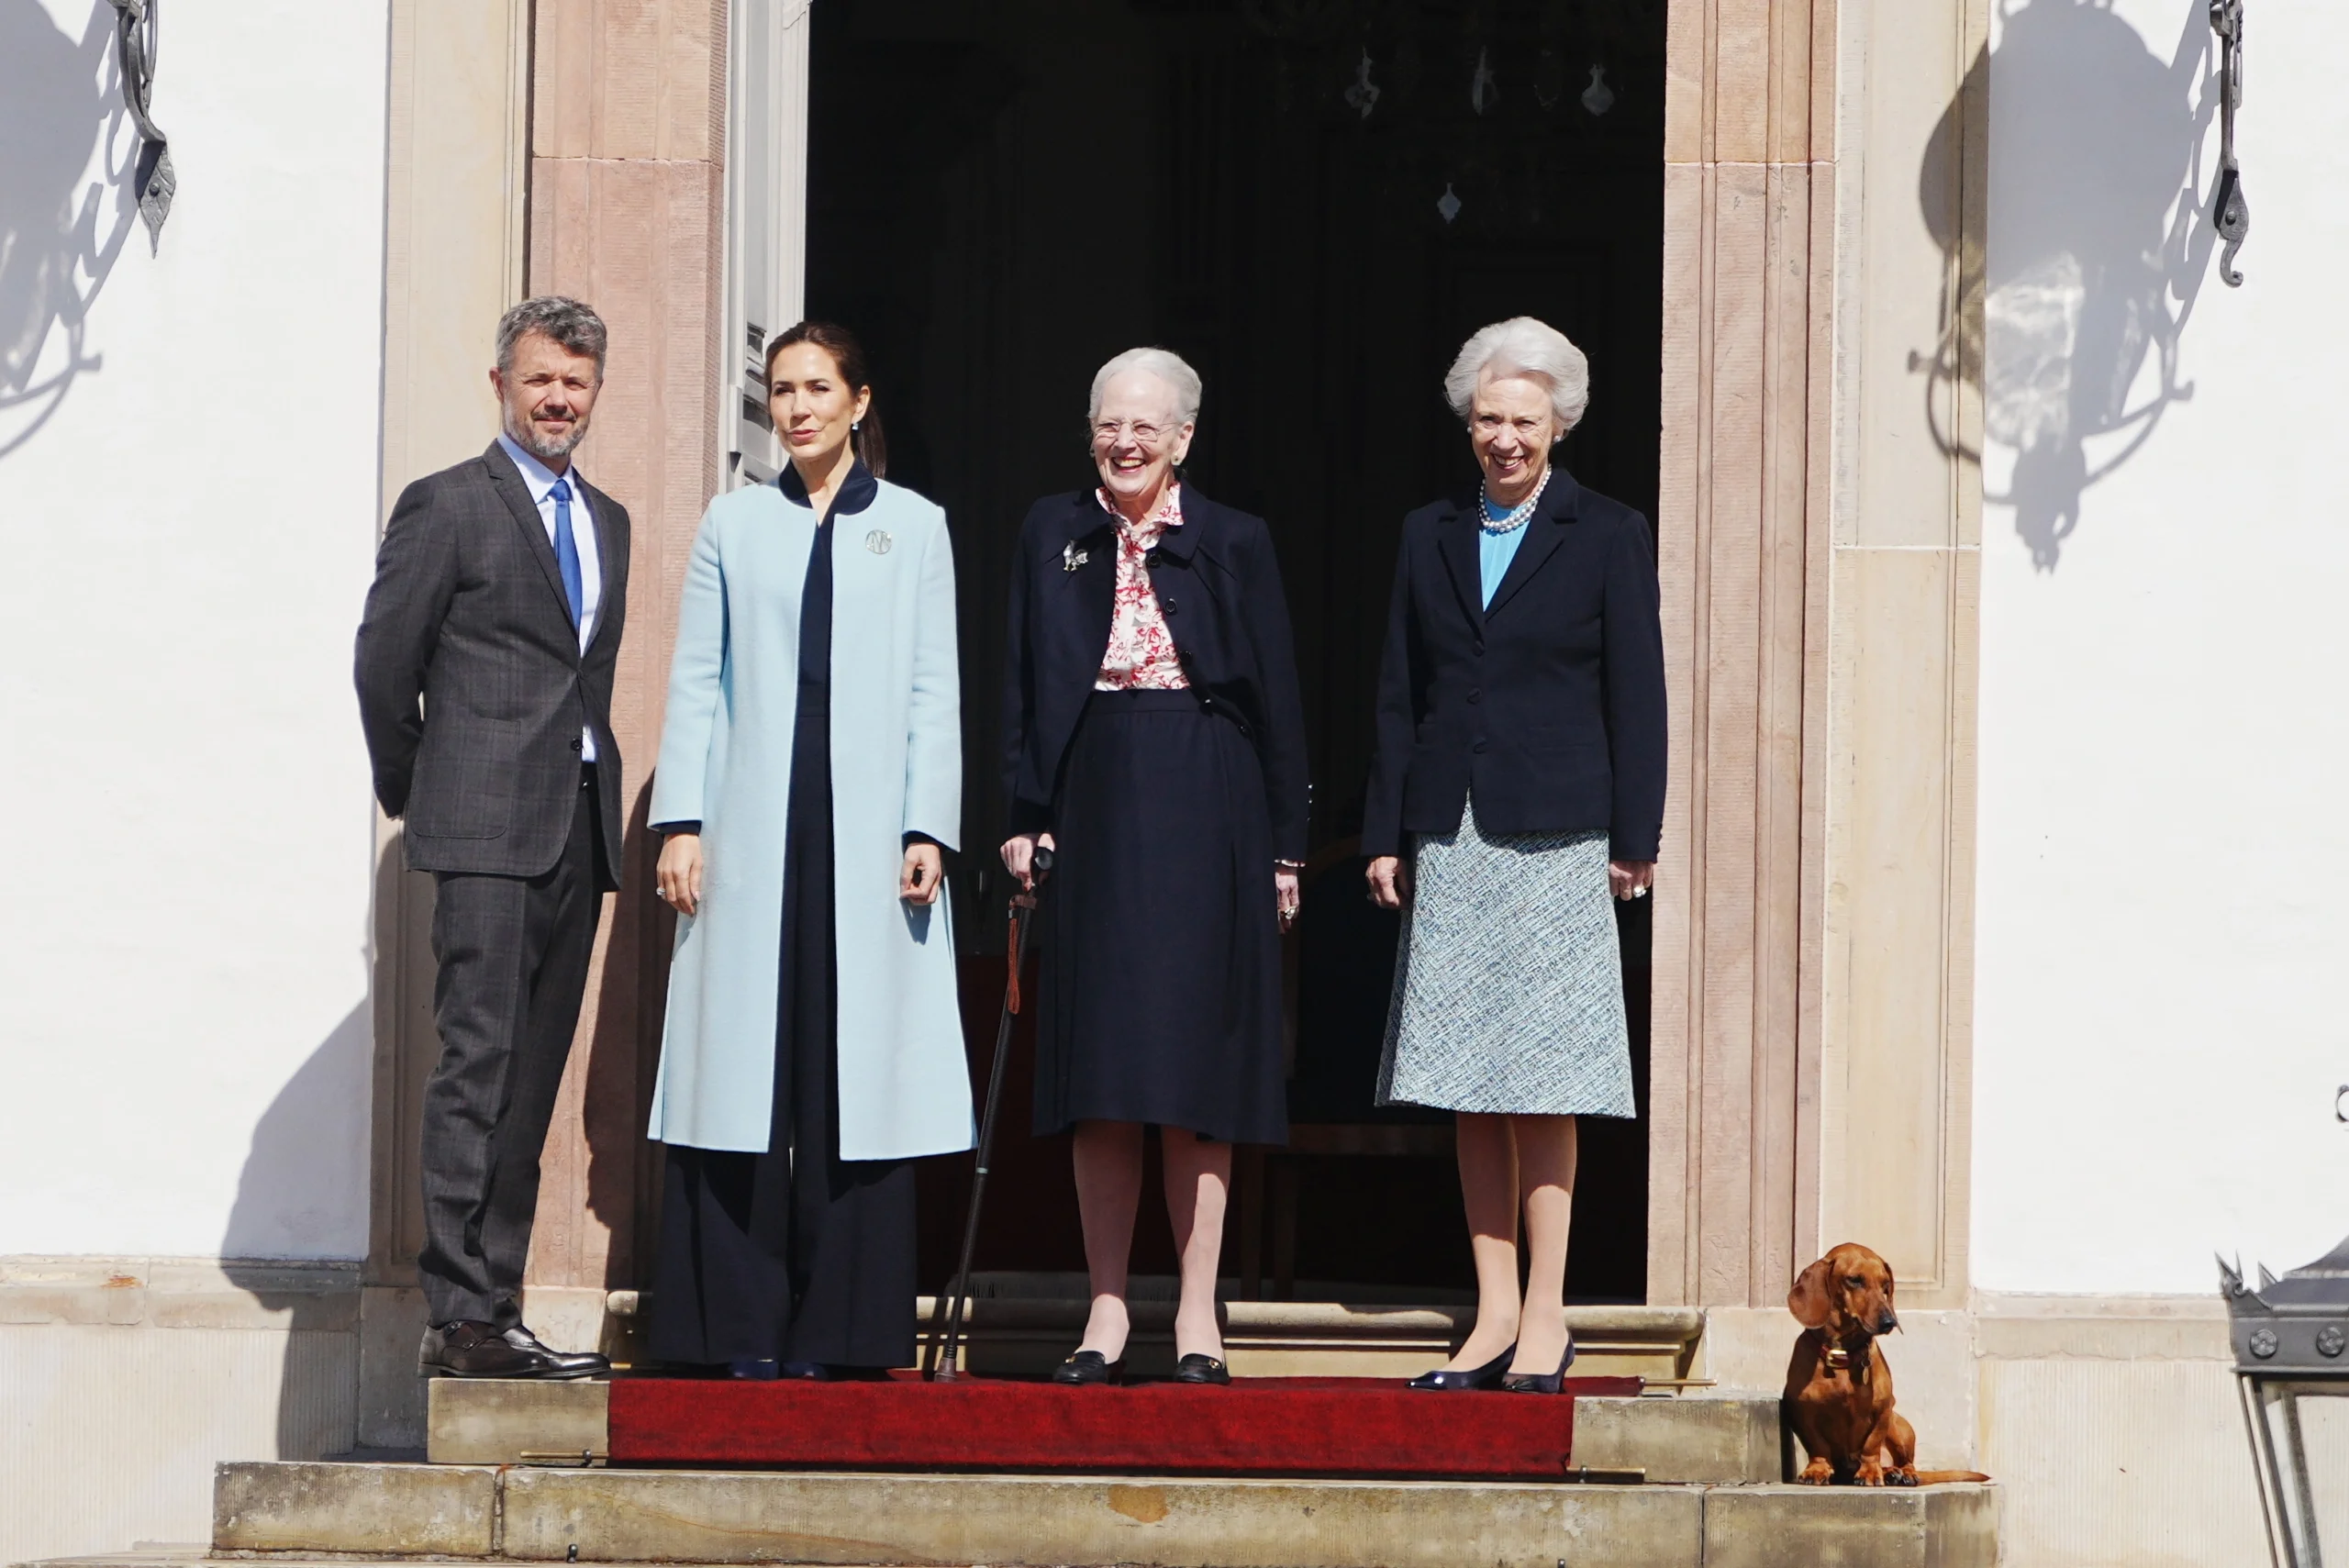 Nach dem Rücktritt von Königin Margrethe ist Prinzessin Benedikte weiter einte wichtige Stütze für das dänische Königshaus. © picture alliance / ASSOCIATED PRESS | Liselotte Sabroe